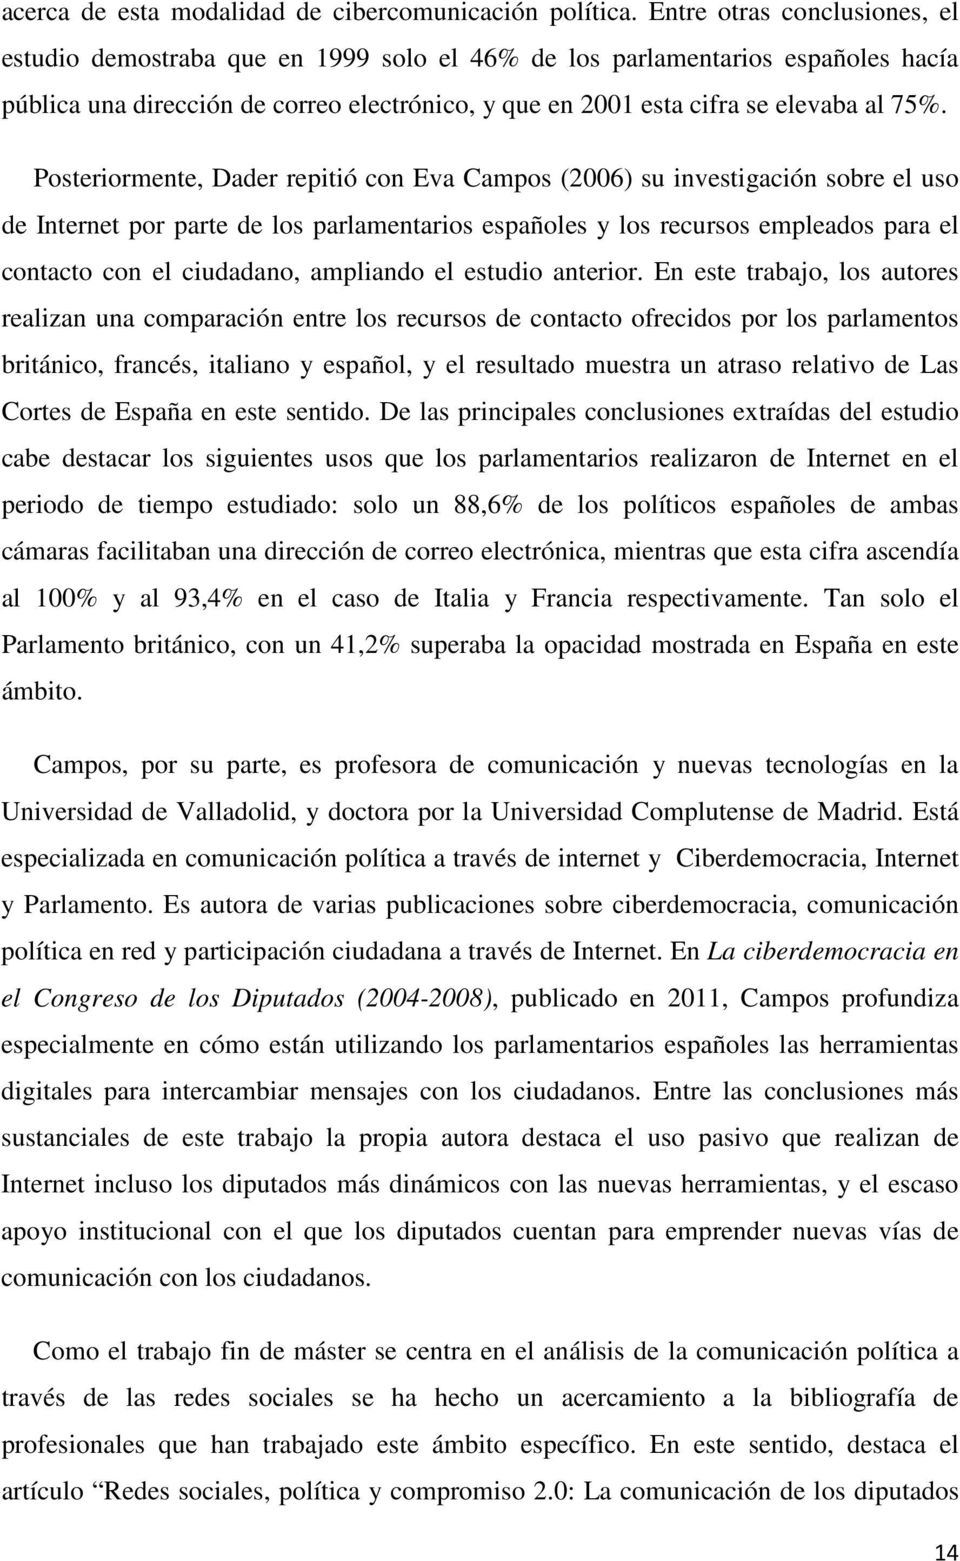 Posteriormente, Dader repitió con Eva Campos (2006) su investigación sobre el uso de Internet por parte de los parlamentarios españoles y los recursos empleados para el contacto con el ciudadano,